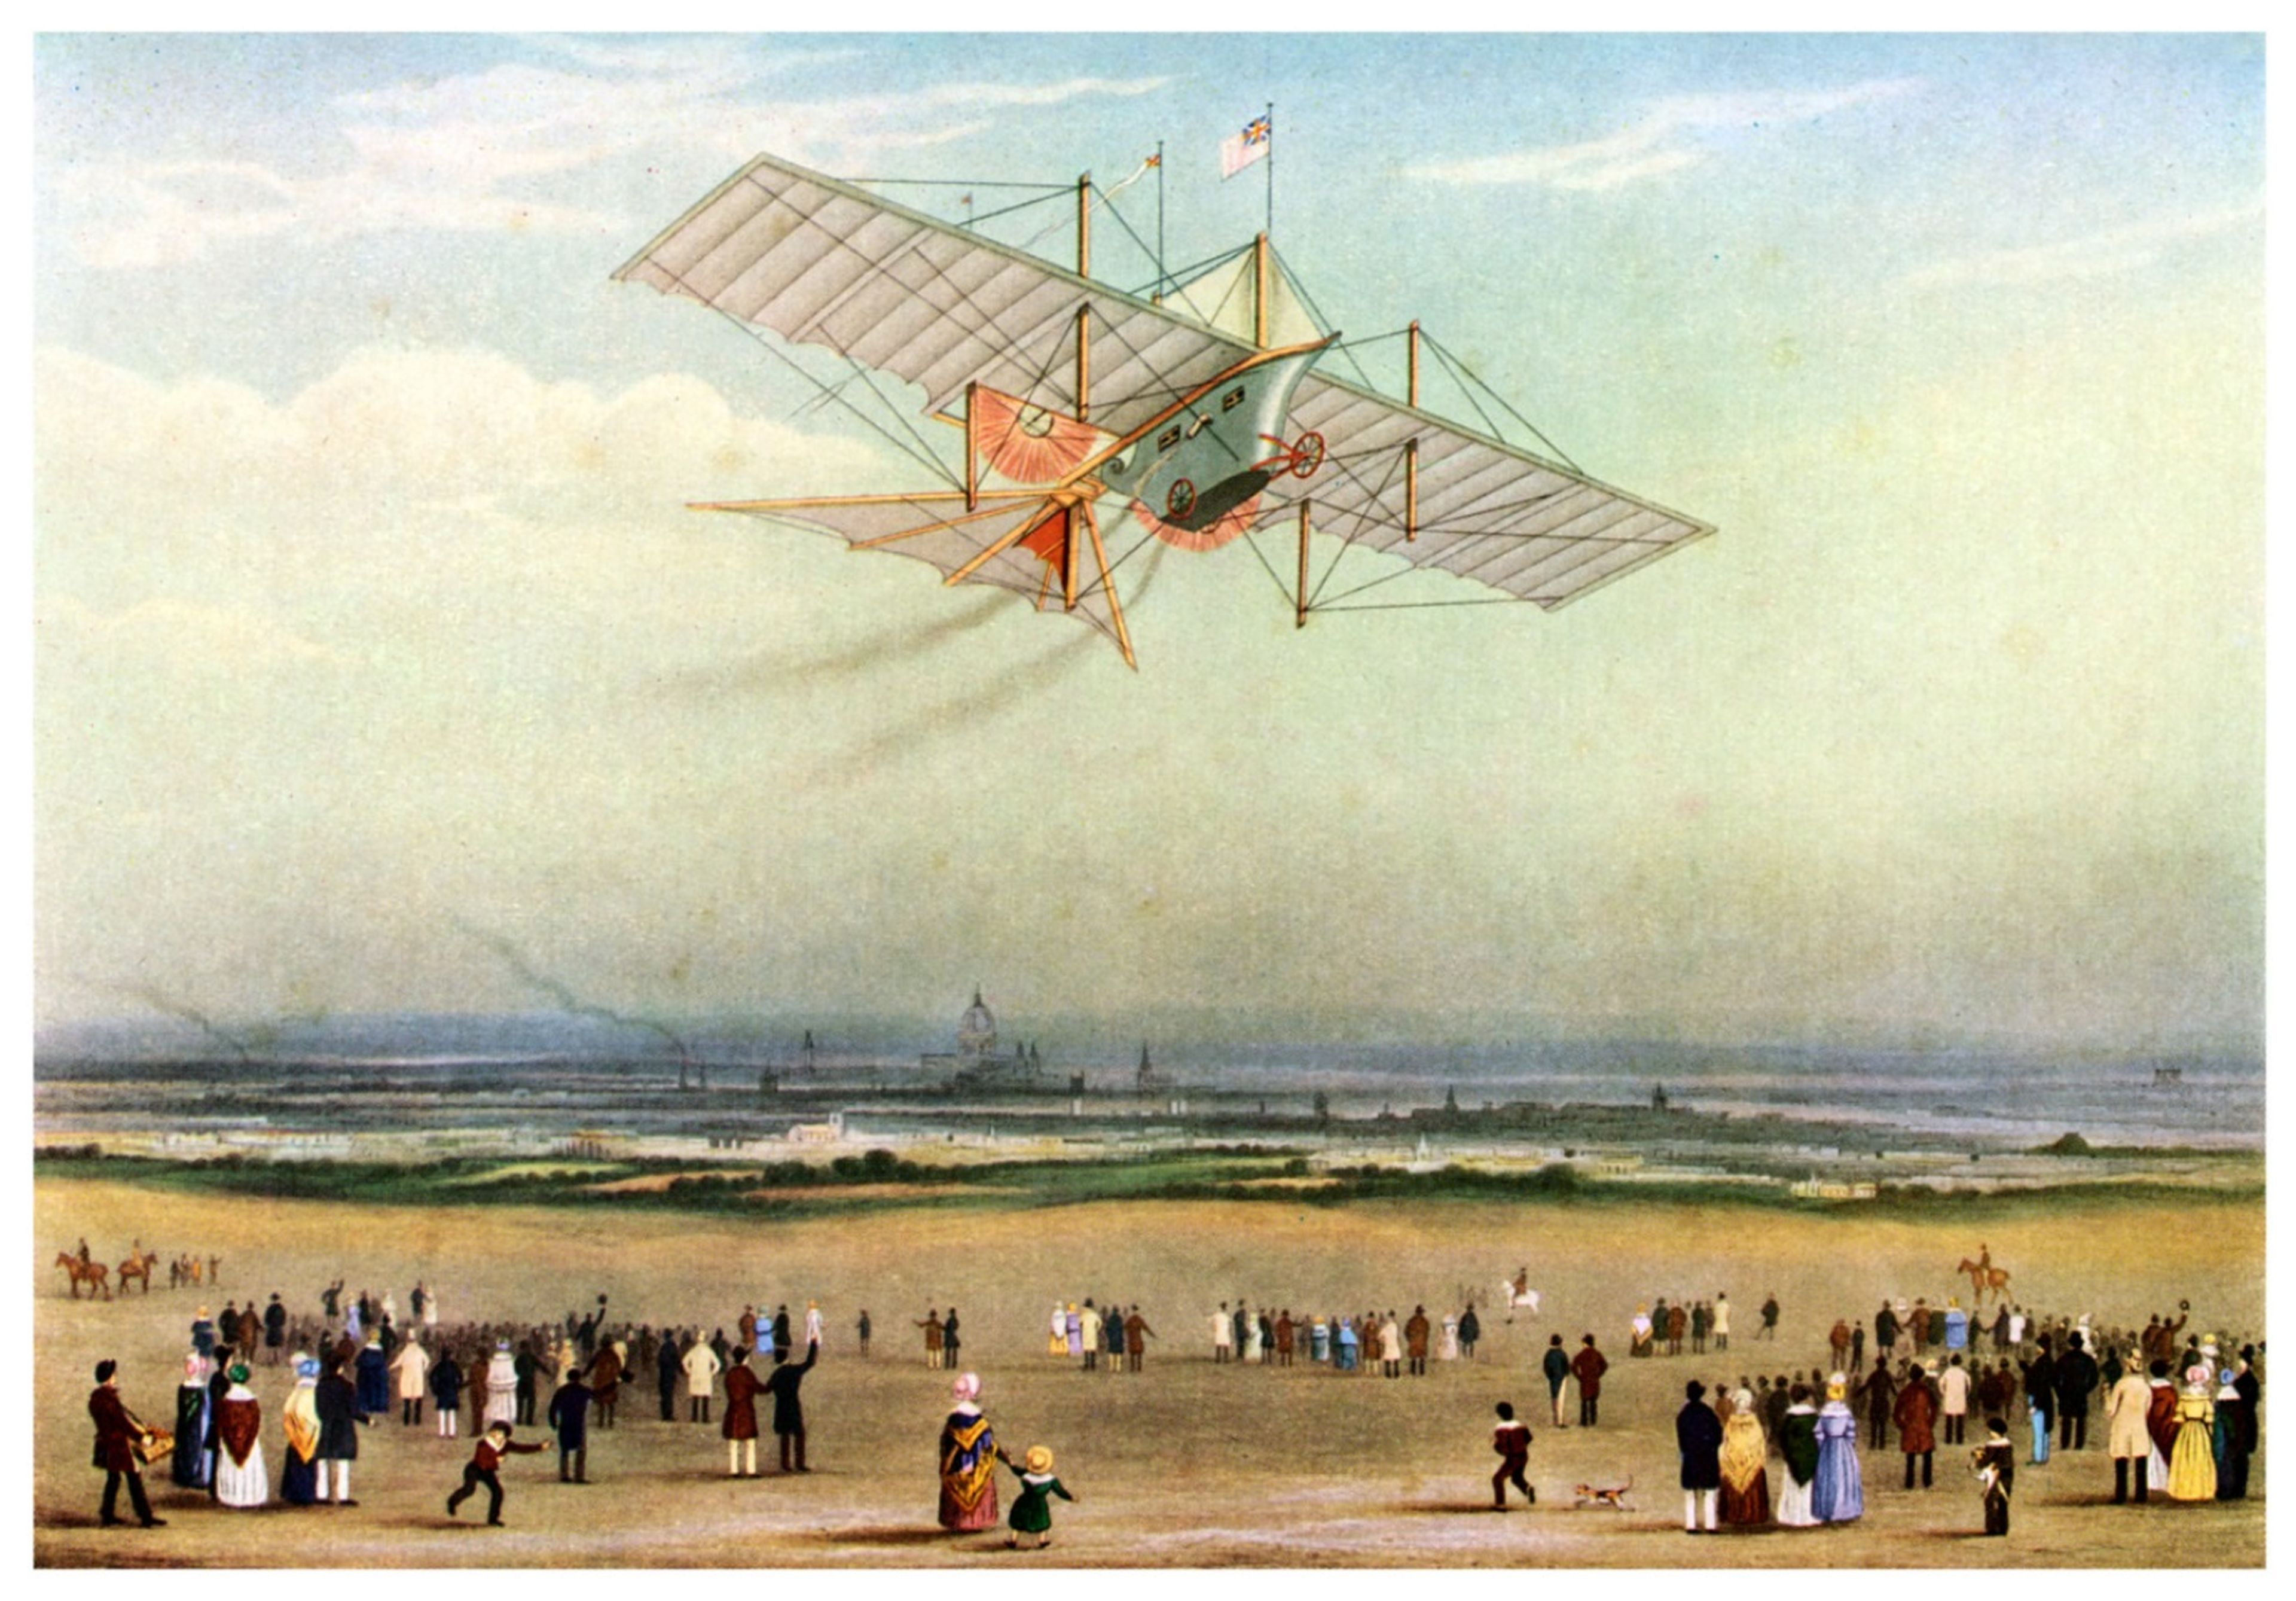 Anuncio del carro de vapor aéreo Henson, hacia 1840.